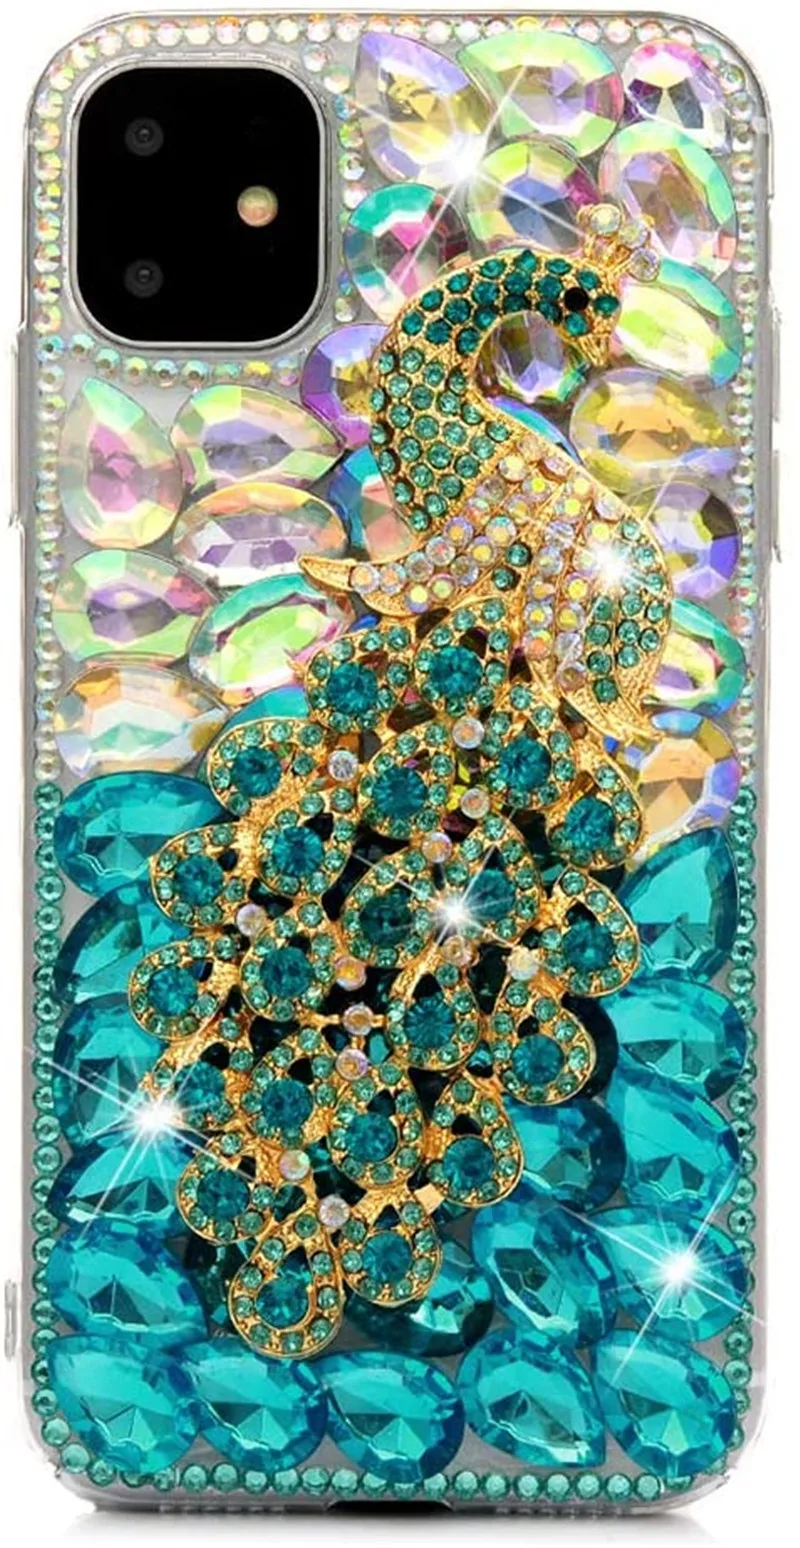 Bling Peacock Gradiente Crystal Cover, Diamond Glitter